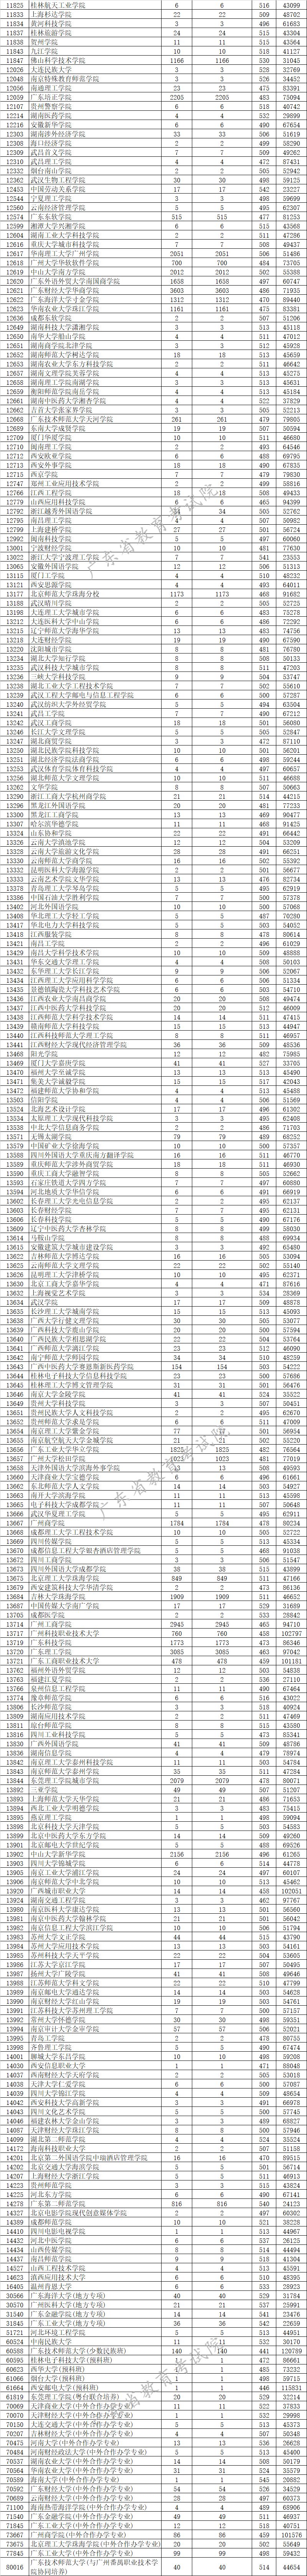 2020年广东省460分排名_2020年广东高考各分数段排名公布!